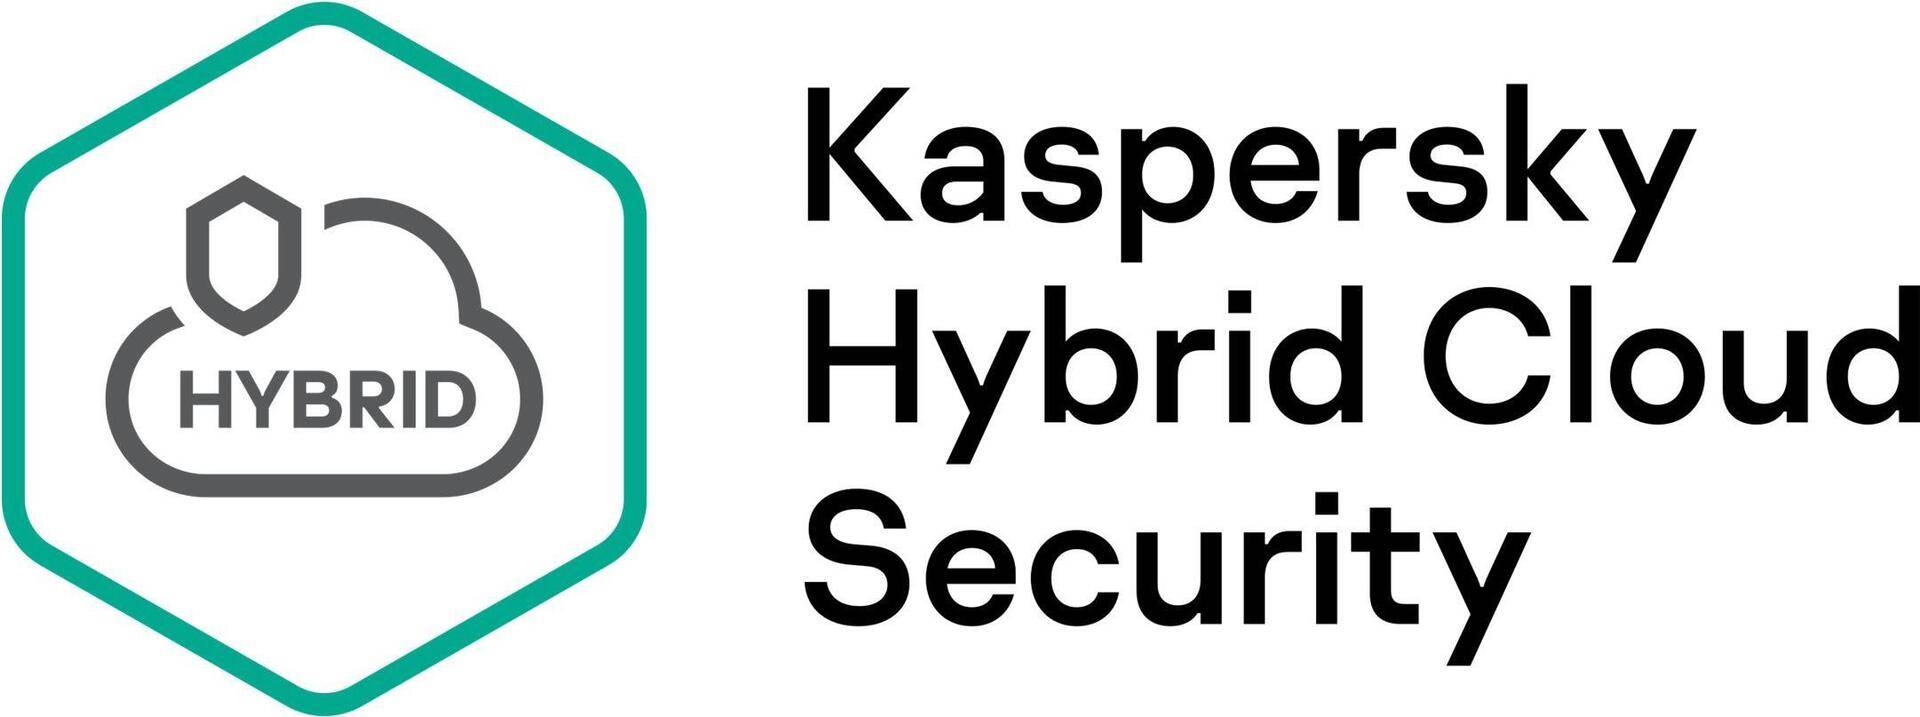 Kaspersky Hybrid Cloud Security Enterprise Edition, Desktop - Erneuerung der Abonnement-Lizenz (4 Jahre) - 1 virtuelle Workstation - Volumen - Stufe N (20-24) - Europa (KL4153XANRR) von Kaspersky Lab